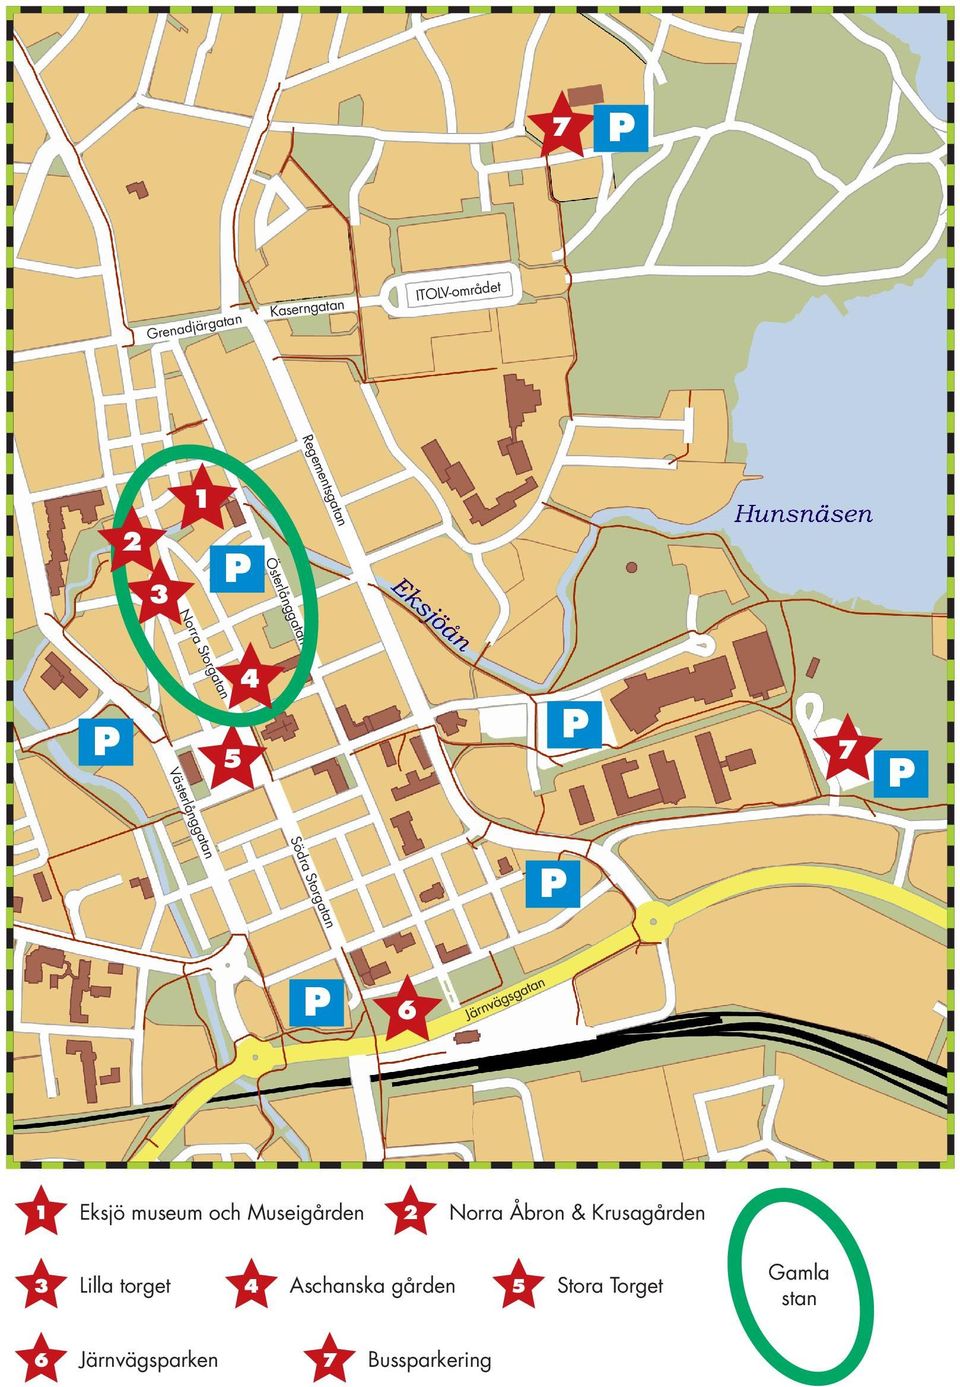 Eksjö museum och Museigården 3 Lilla torget 6 Järnvägsparken 4 tan sga väg Järn